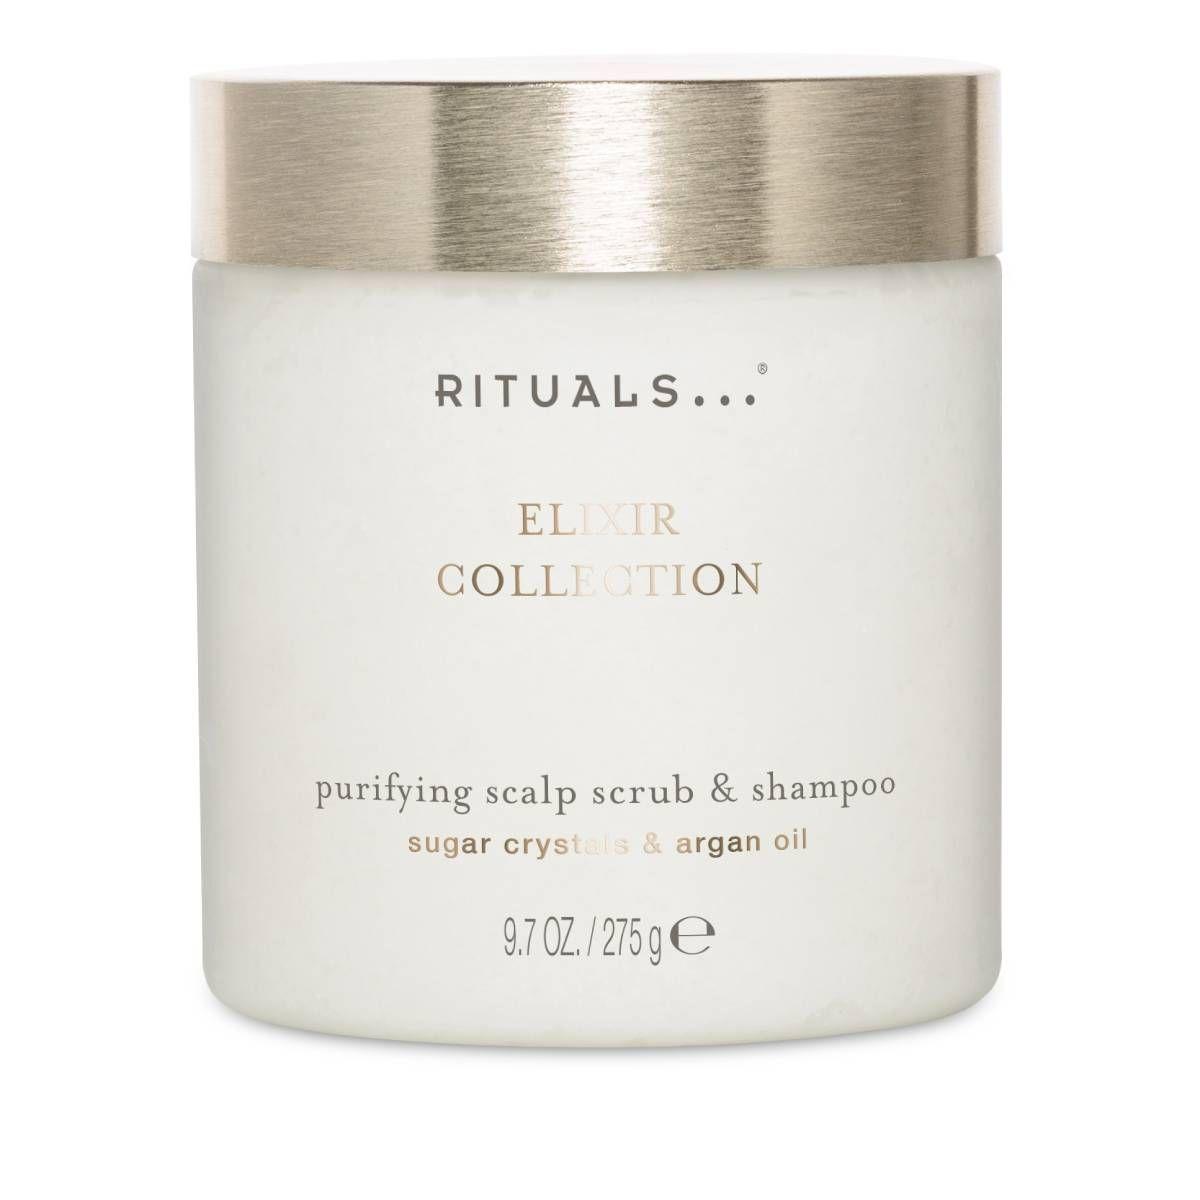 Elixir Collection Purifying Scalp Scrub &amp; Shampoo, de Rituals